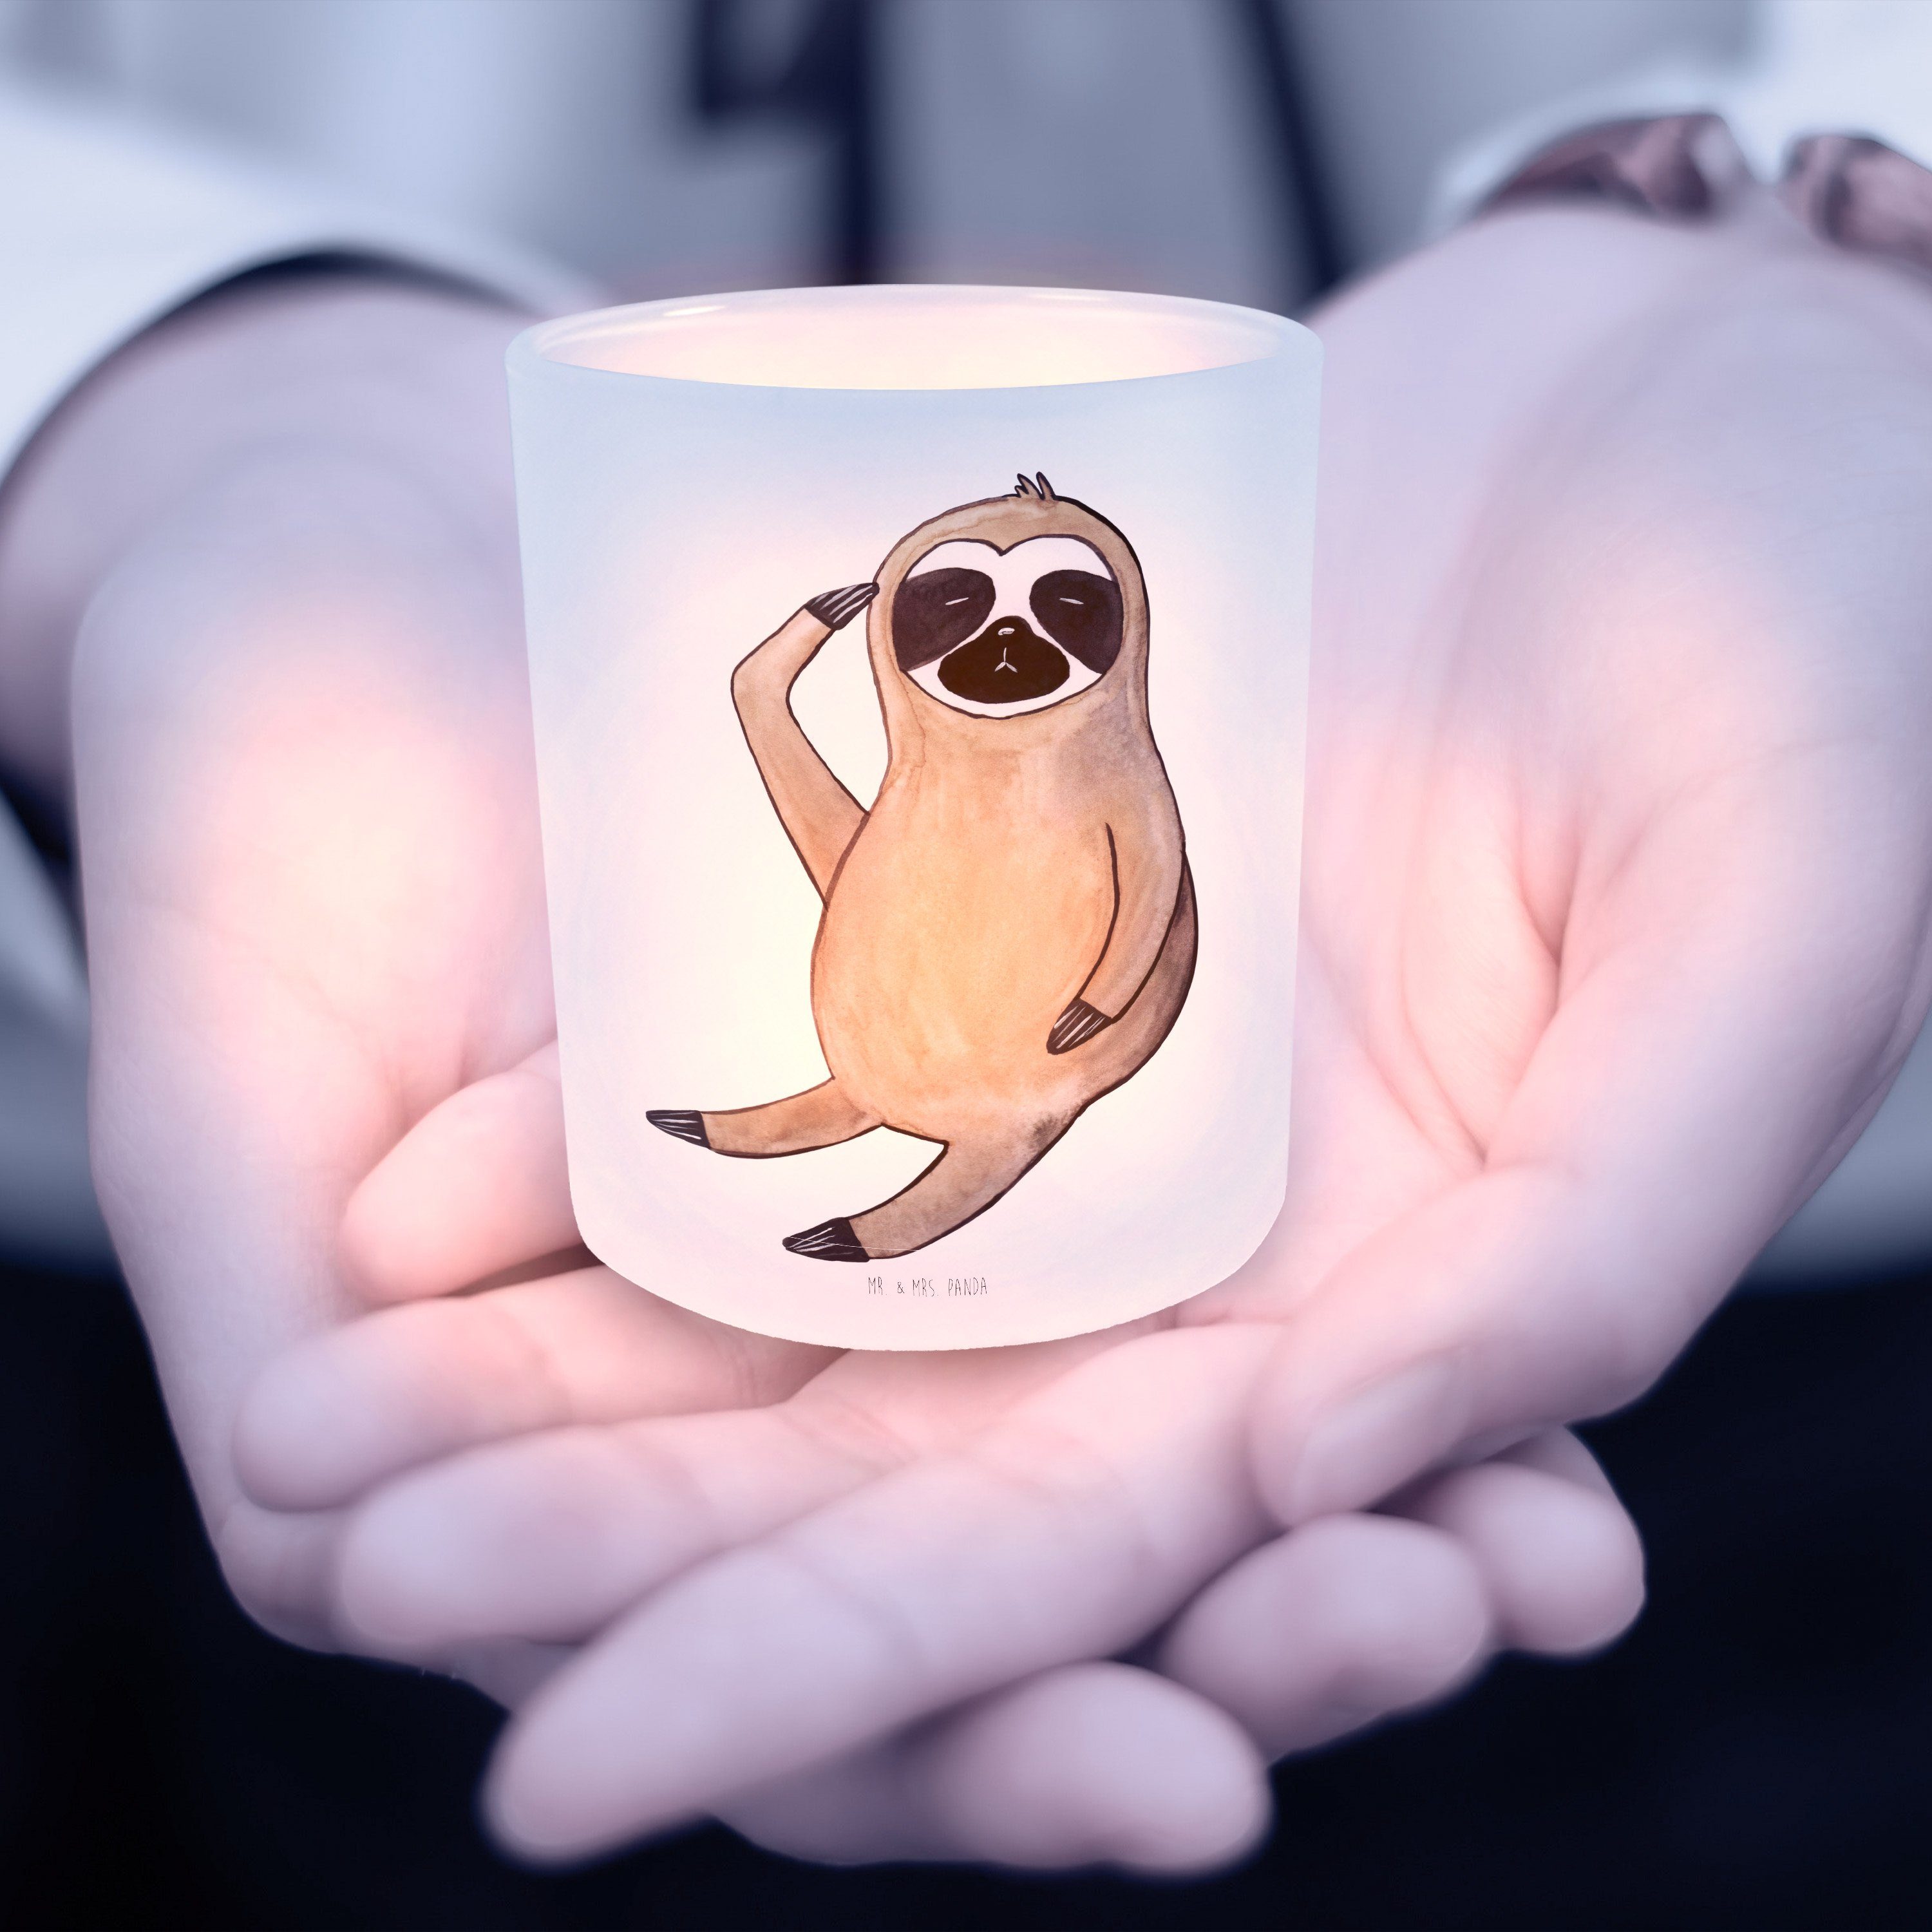 Transparent (1 - Mr. Teelichthalter, Mrs. St) & Vogel - Panda Faultier Windlicht zeigen Geschenk, Liebl